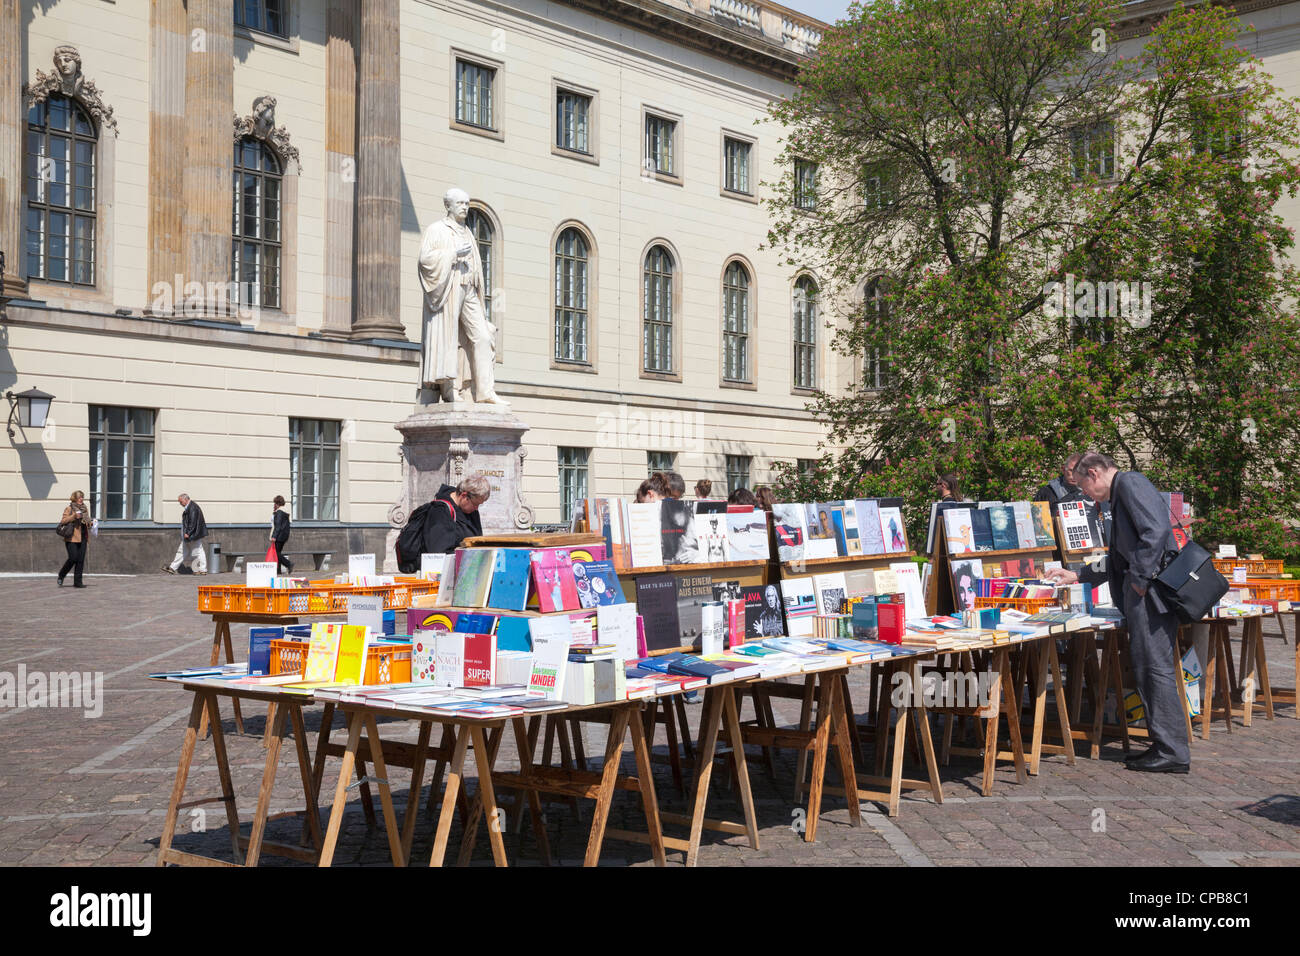 Humboldt-Universität mit Büchermarkt, Berlin, Deutschland Stockfoto